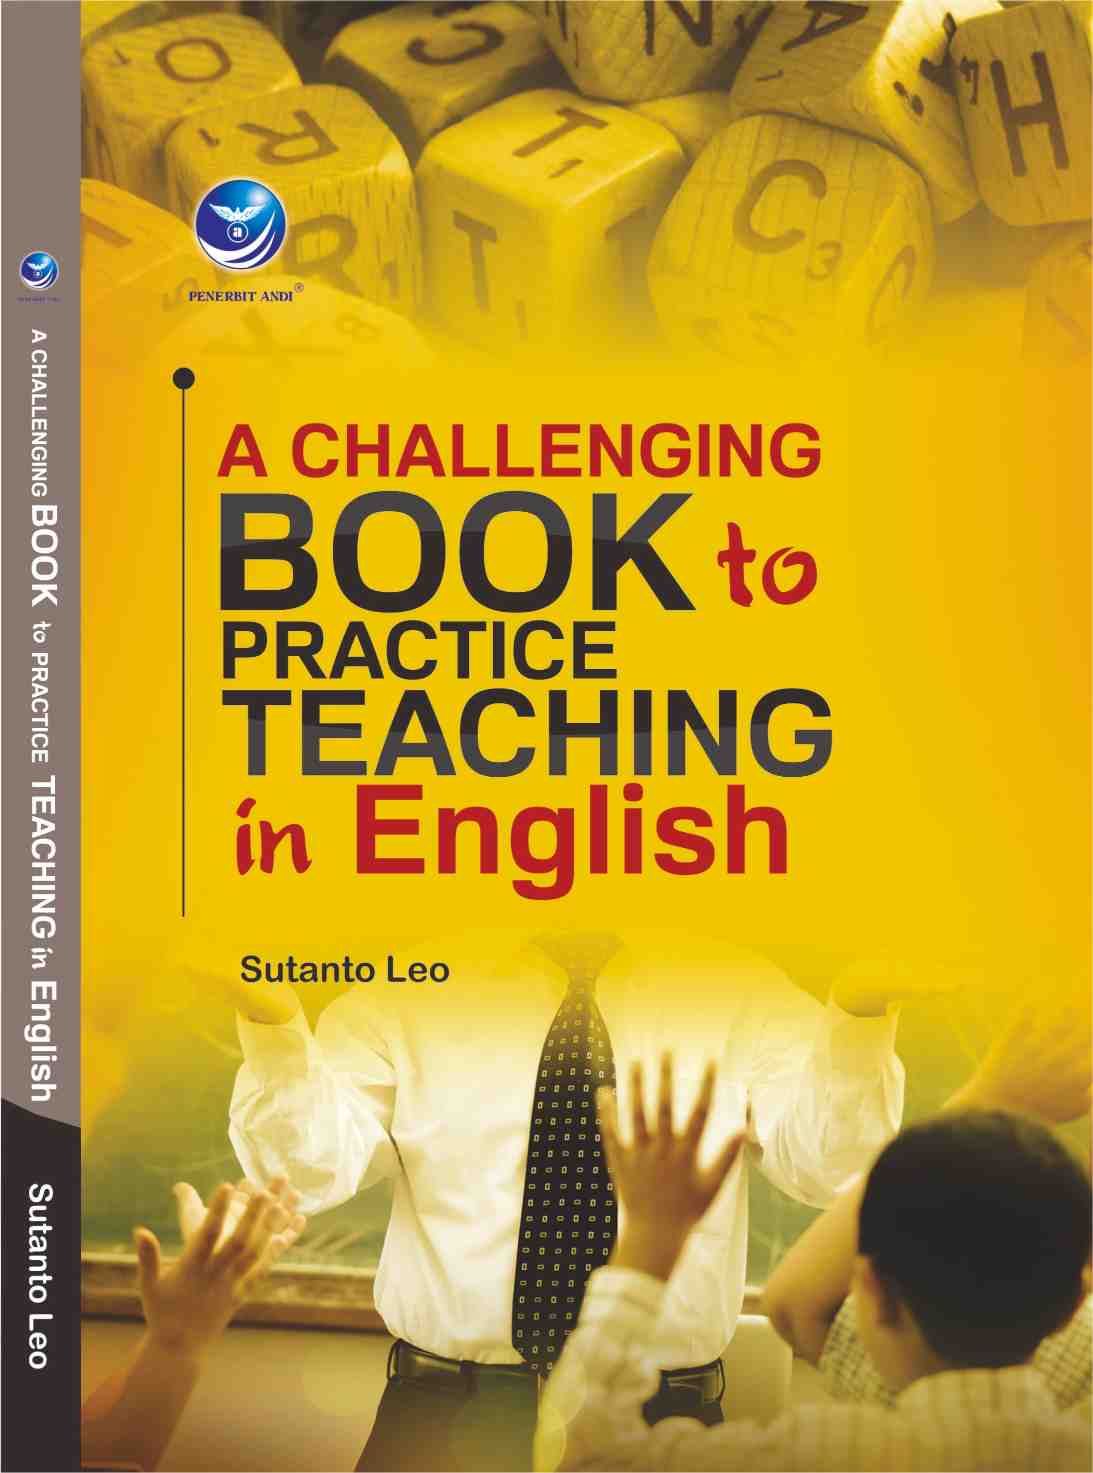 Teaching Practice Handbook. Teaching English book Cover. Teaching Practice Handbook Roger. Book Cover texture teaching English. Books for english teachers